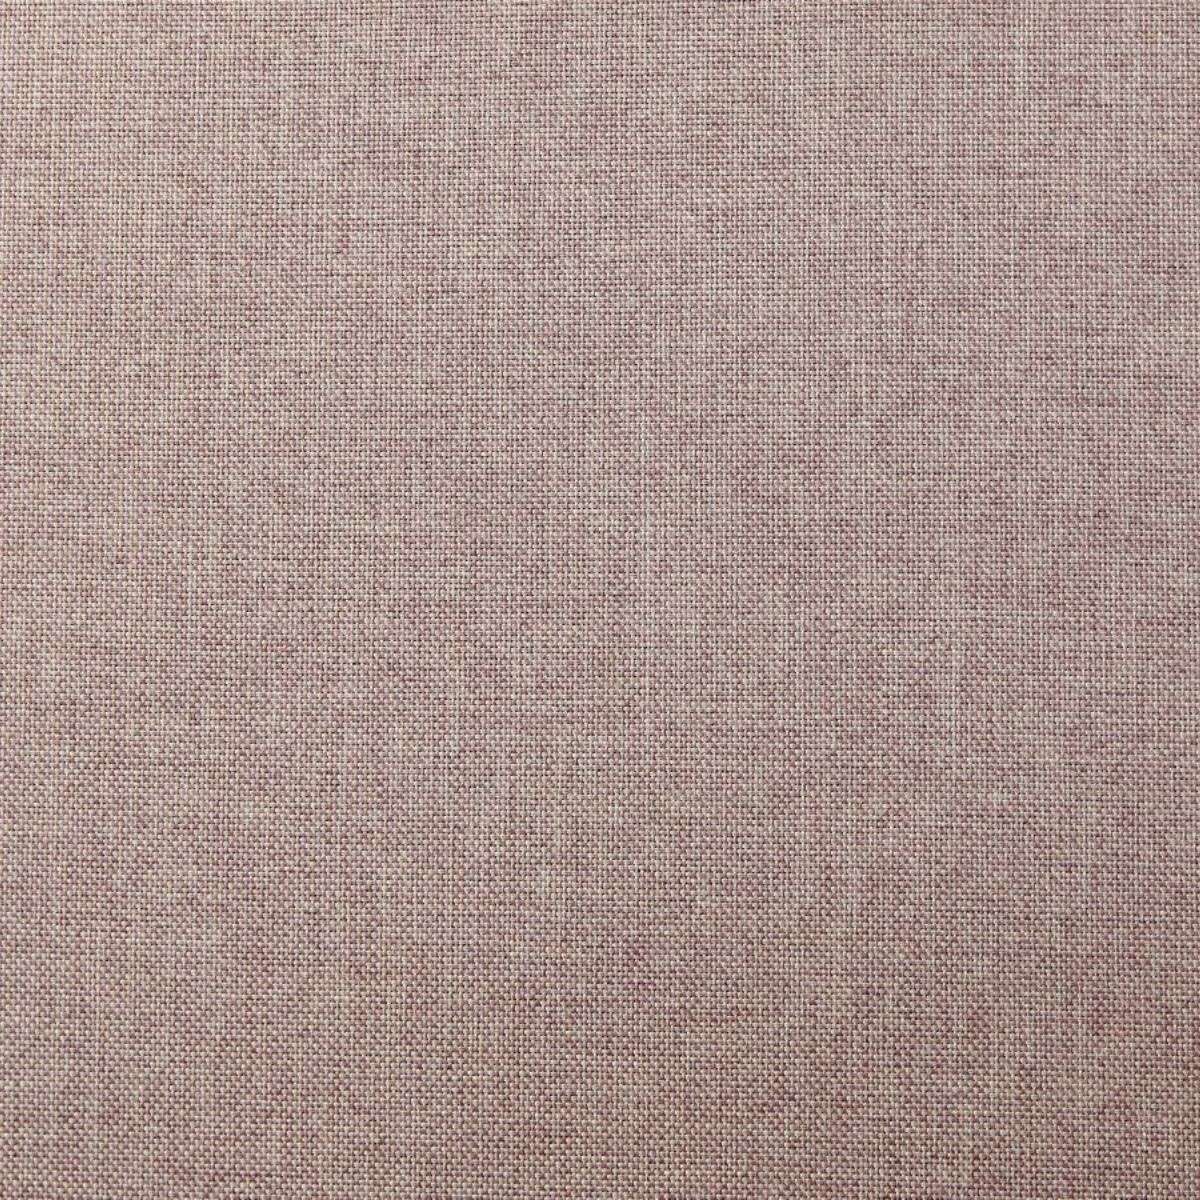 Imogen Single Bed - Dusty Pink